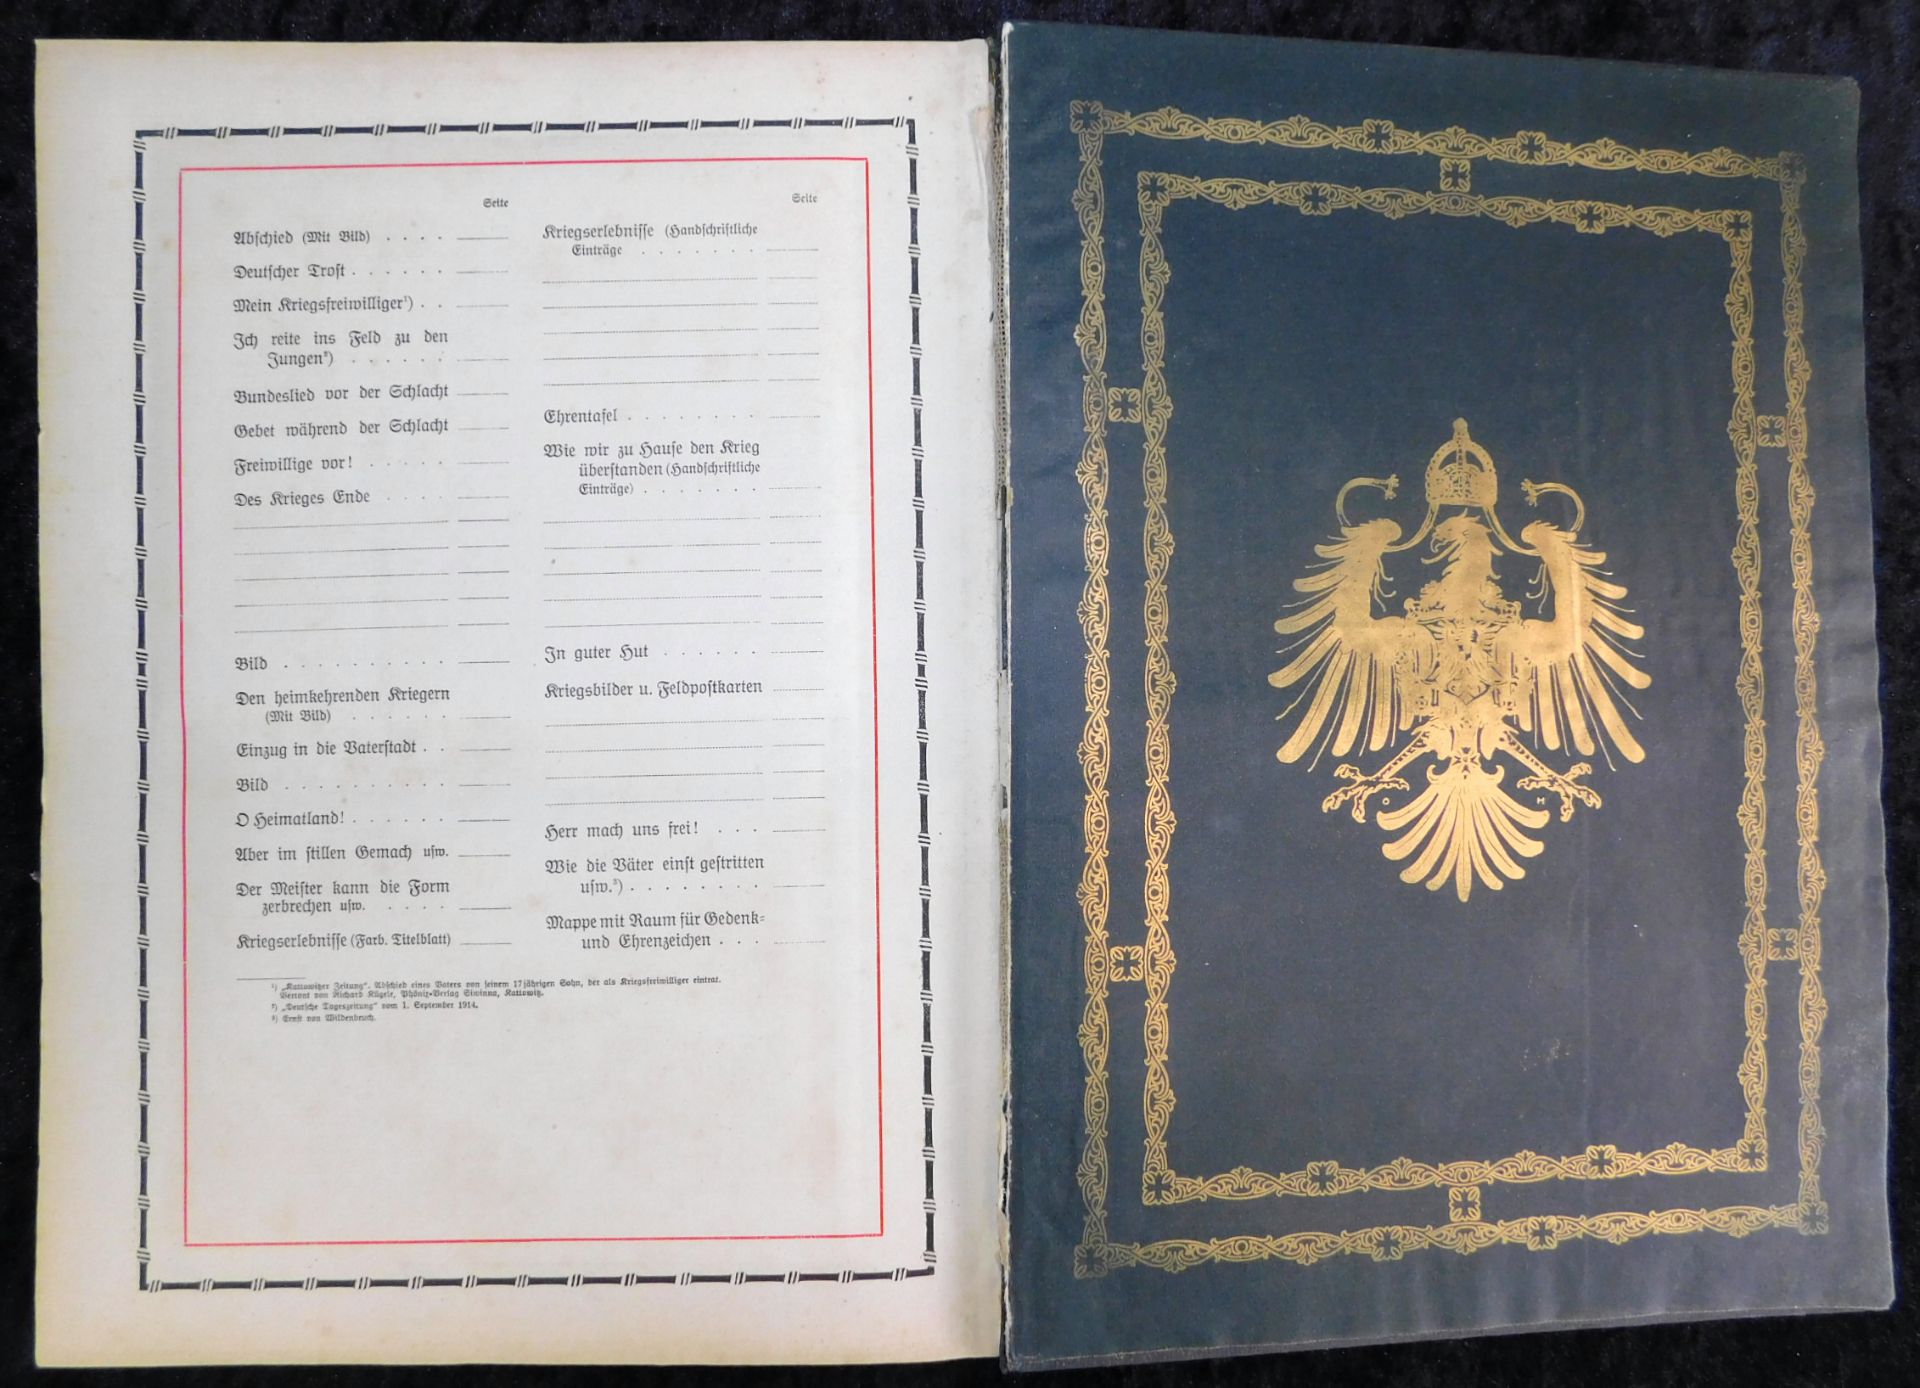 Großes Ehrenbuch 1914, Familienstammbuch, Verlag Joh.E.Hubens, Diessen/München - Image 7 of 7